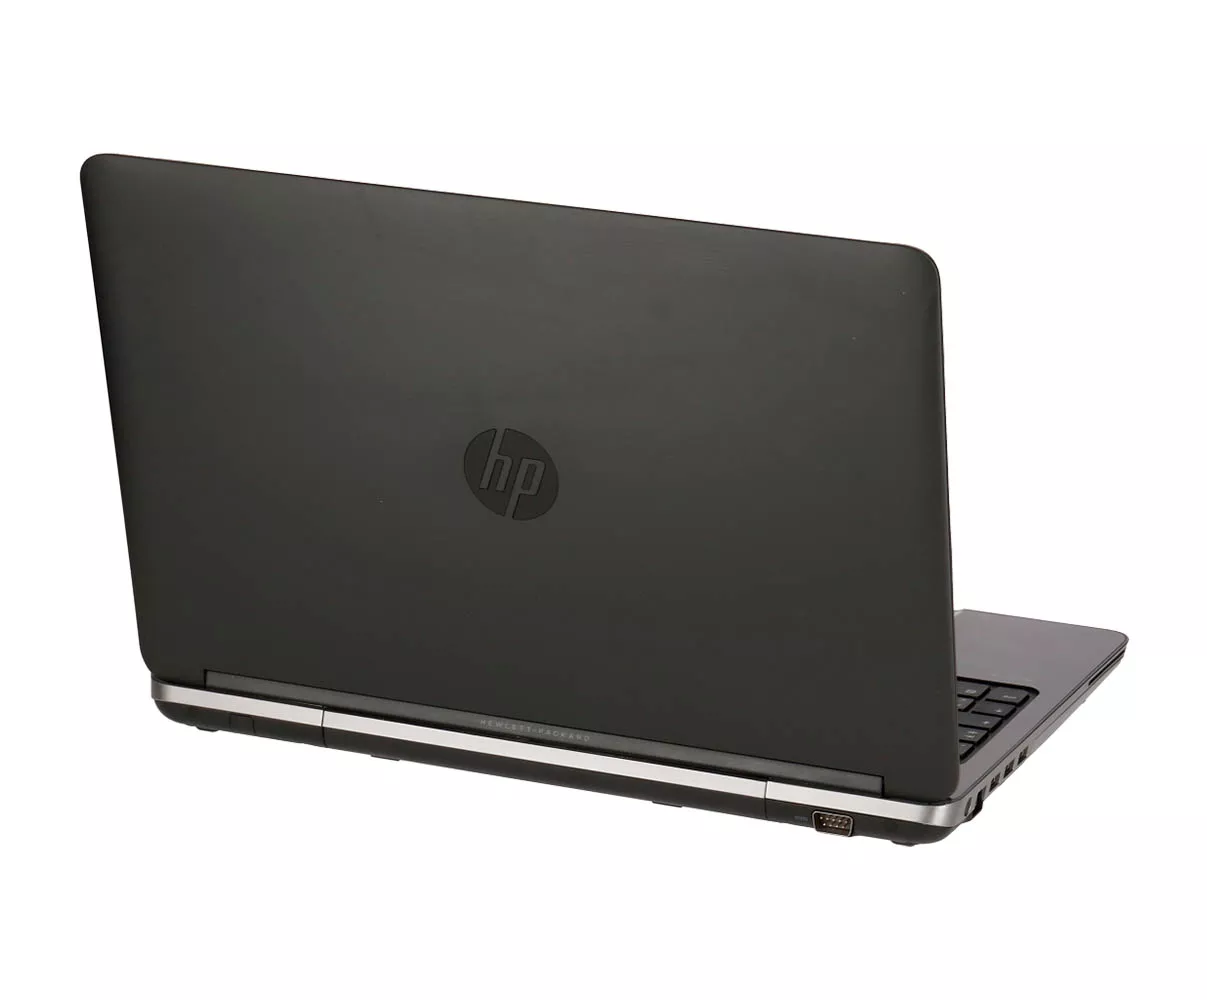 HP ProBook 650 G1 Core i5 4300M 2,6 GHz